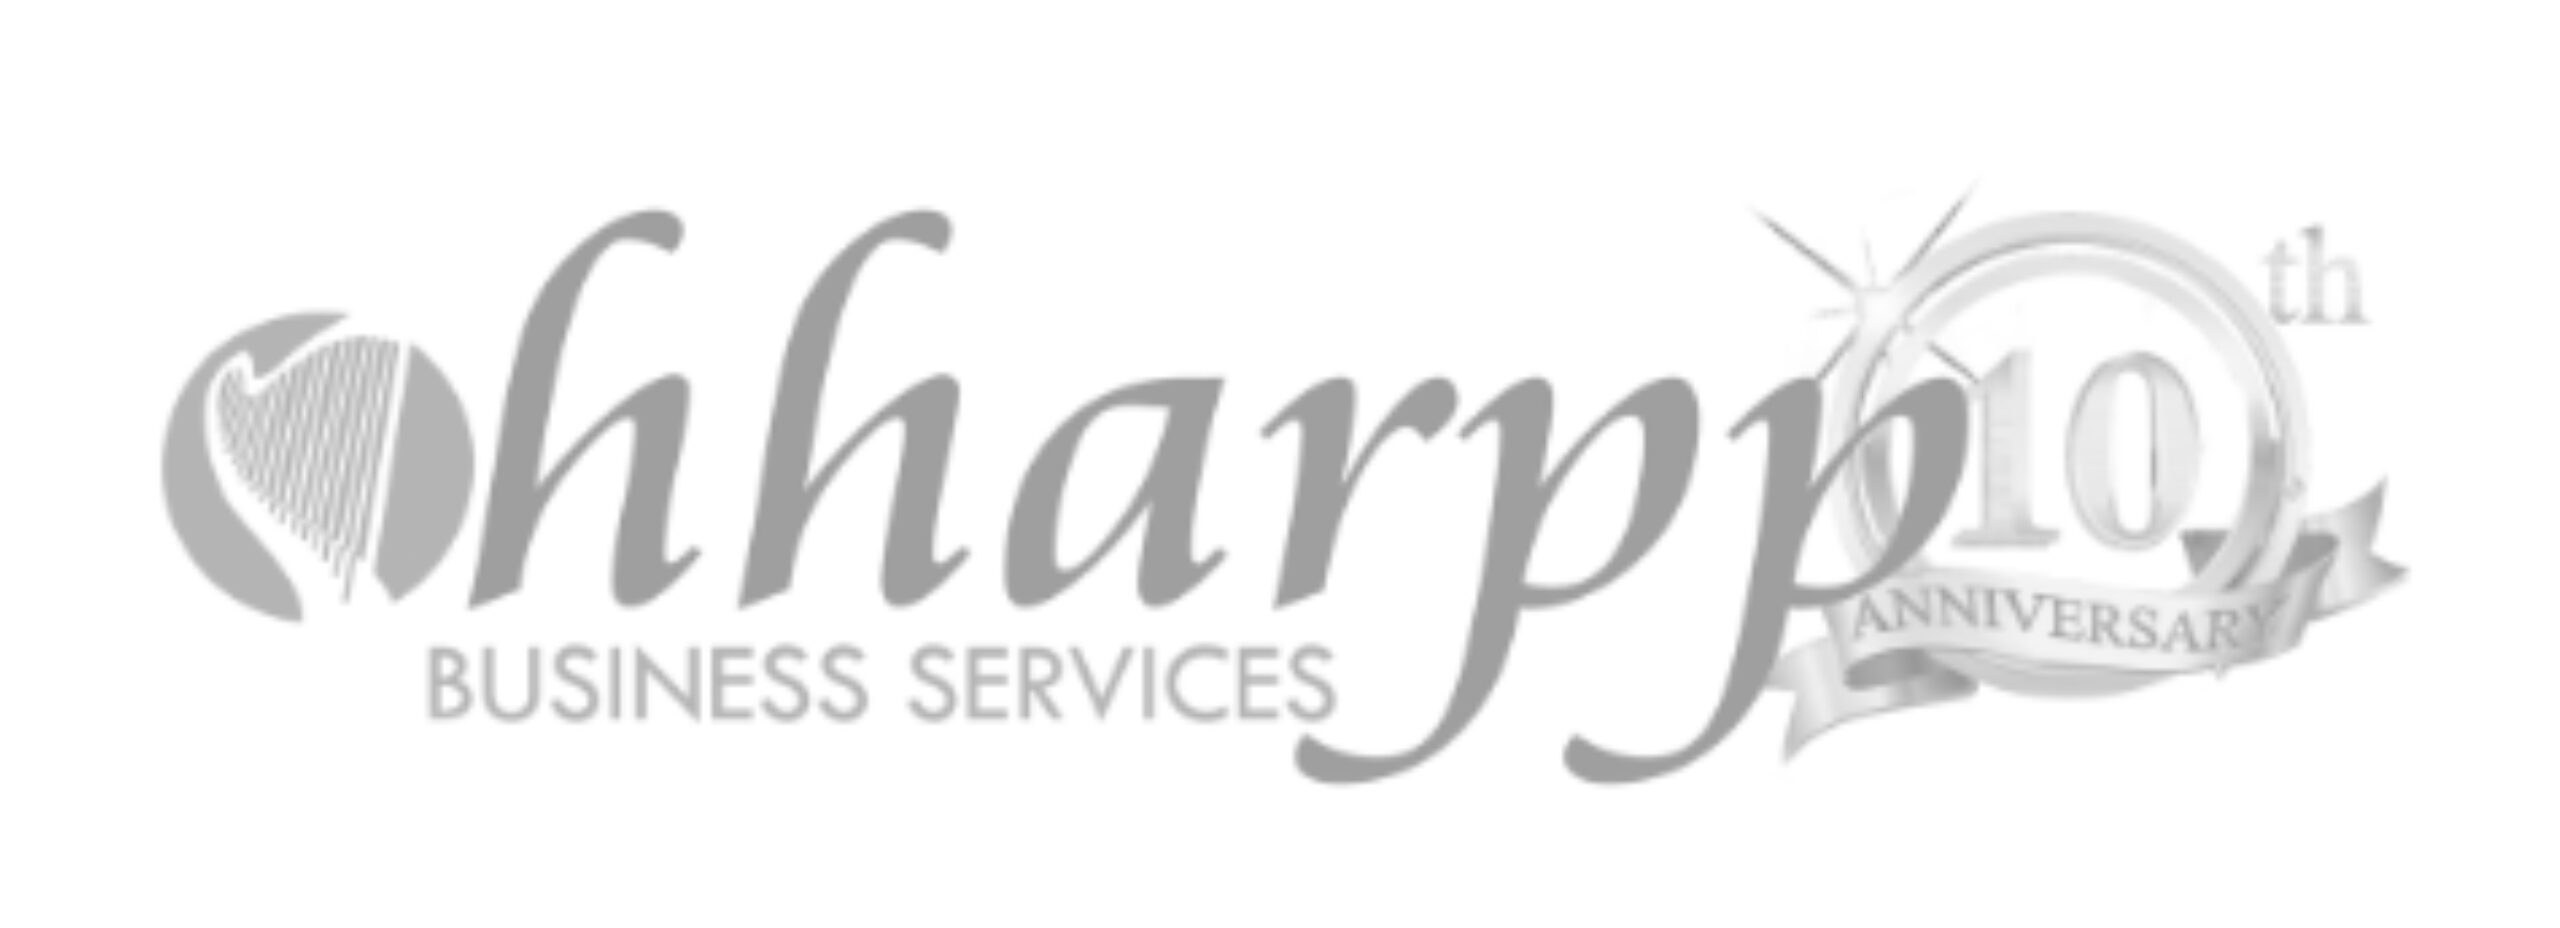 hharpp logo-1